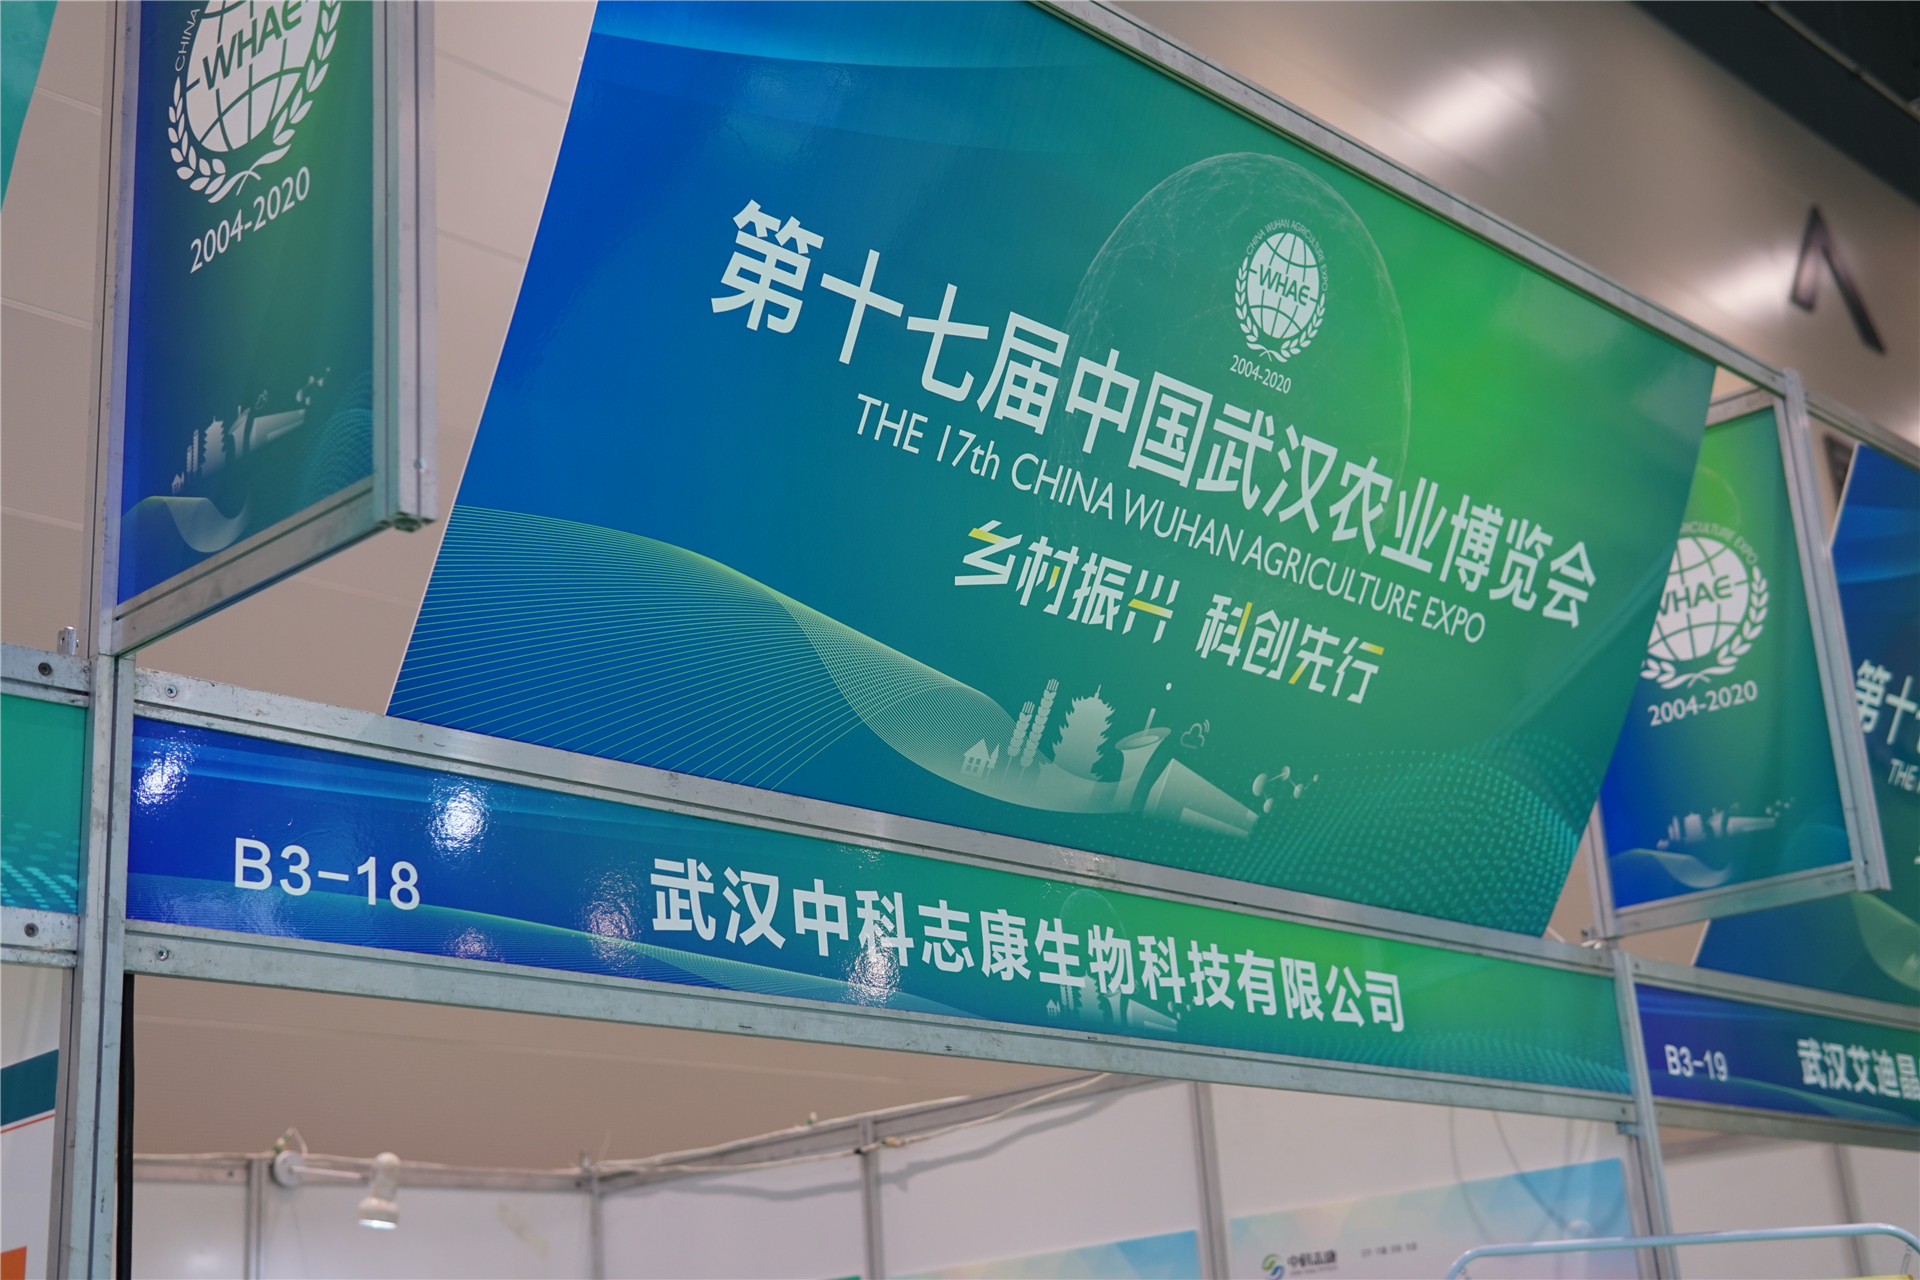 第17届中国武汉农业博览会 | 中科志康食品安全检测方案引关注！